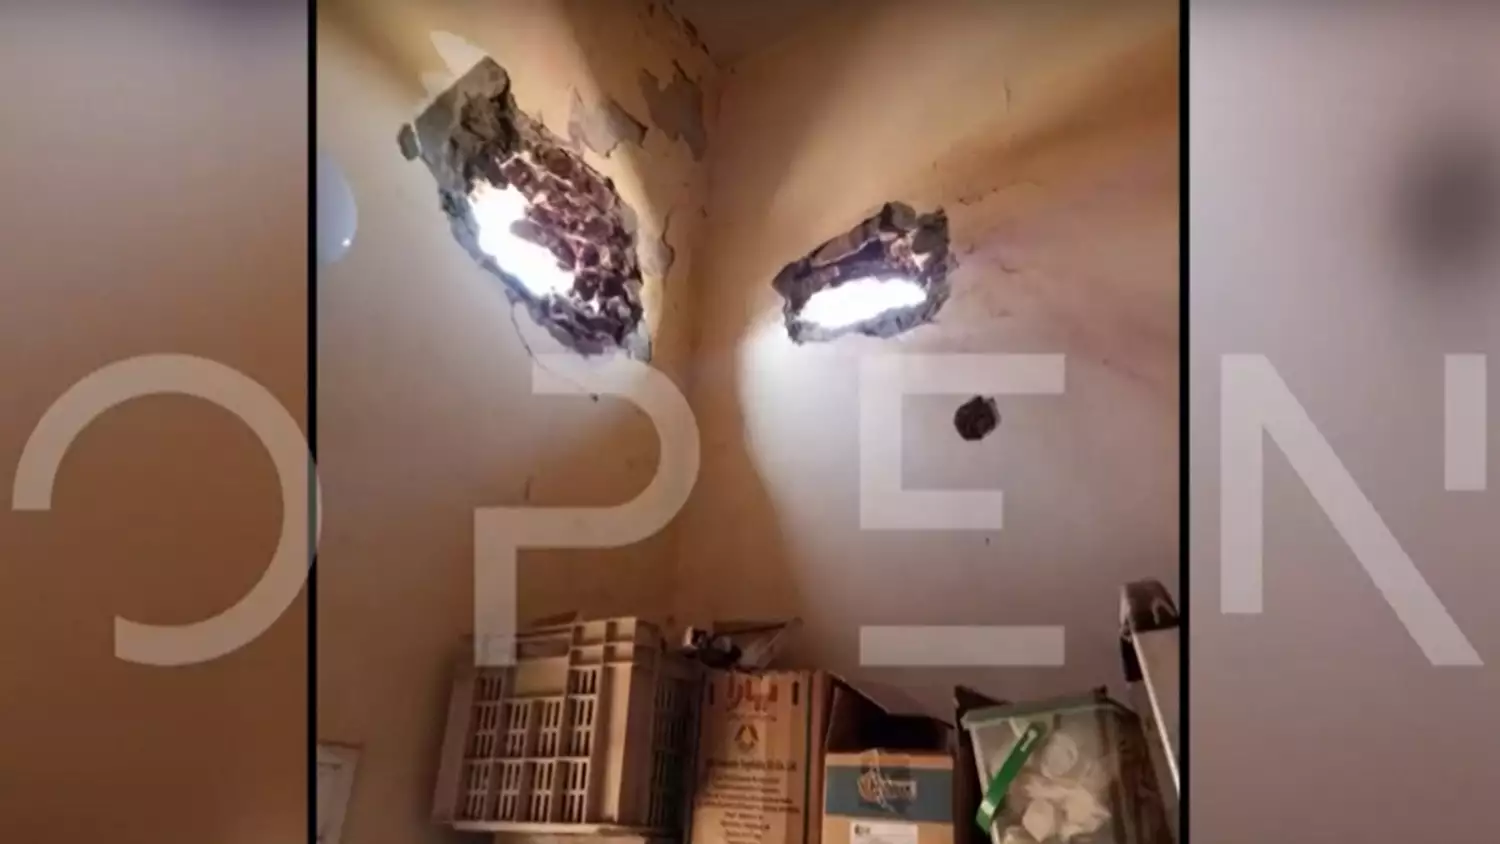 Σουδάν: Ρουκέτα χτύπησε σπίτι Ελλήνων στο Χαρτούμ BINTEO - ΦΩΤΟ